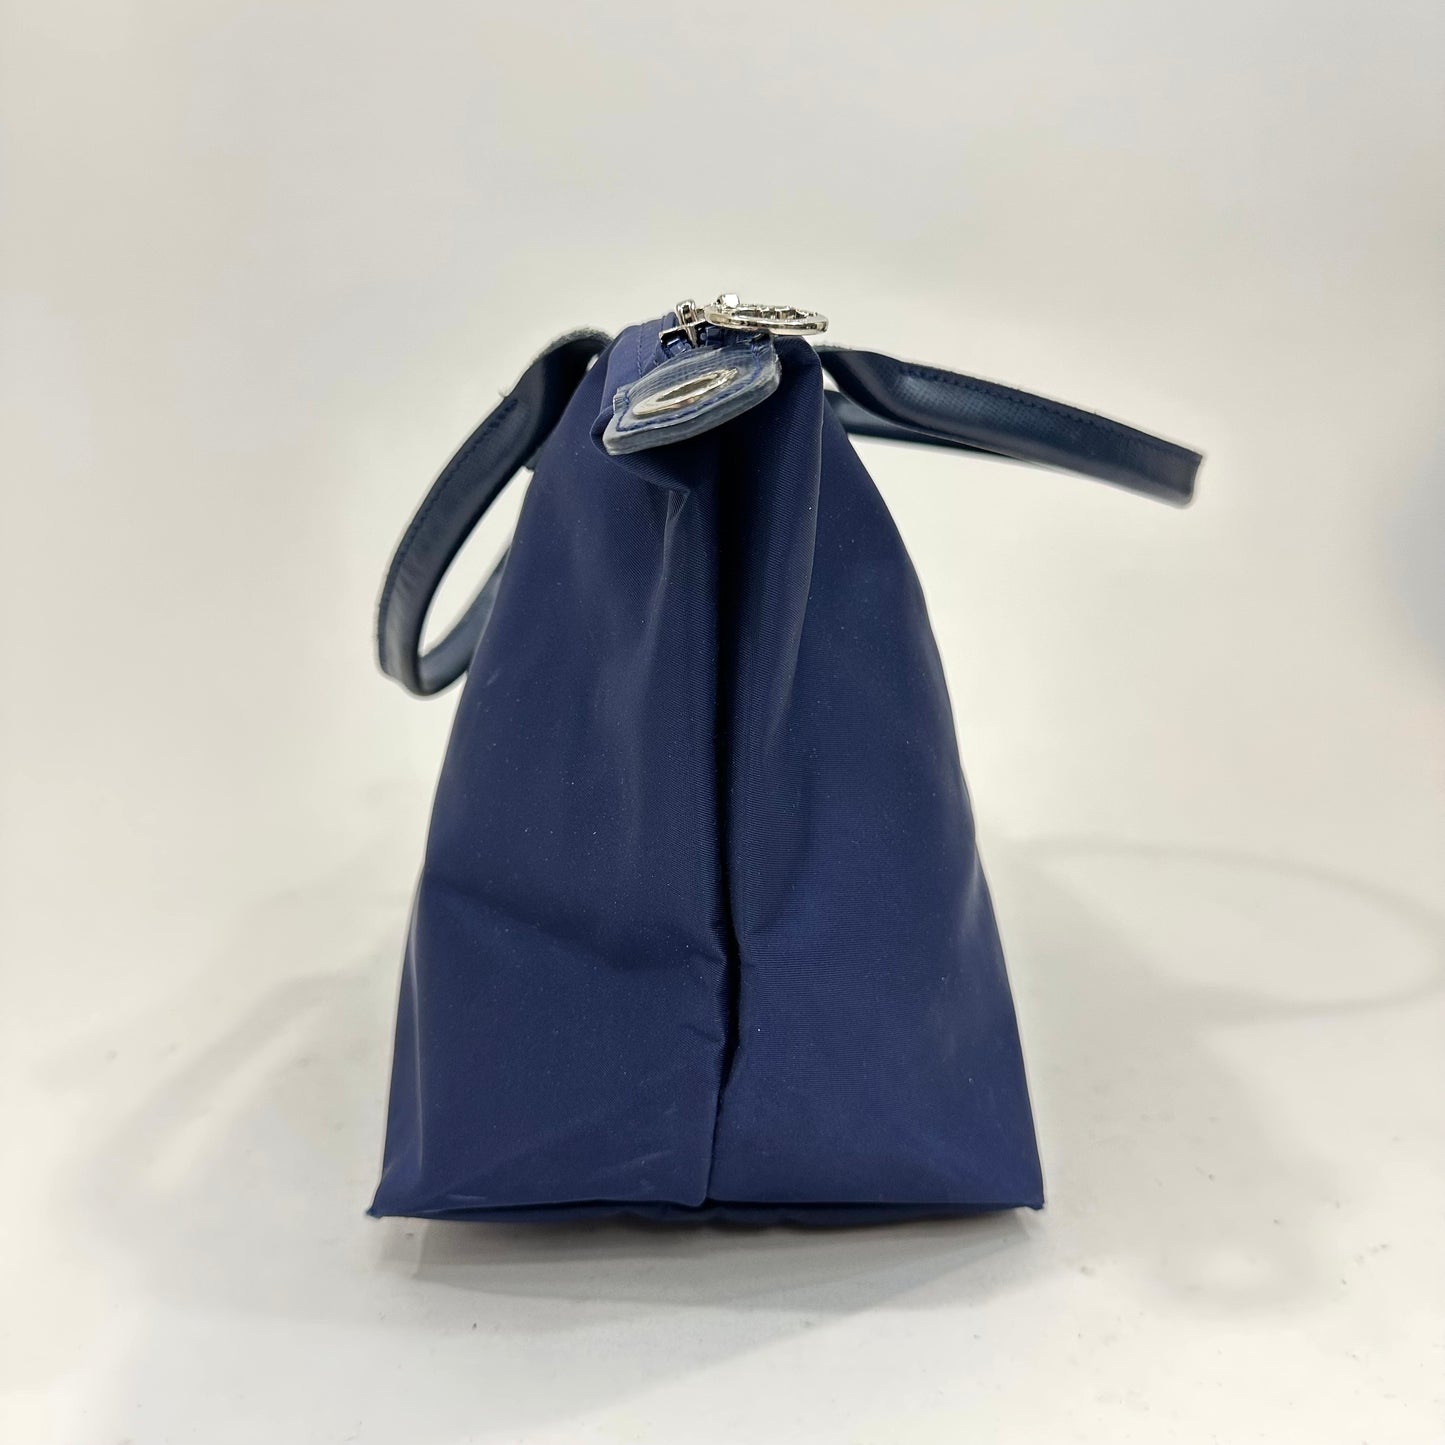 Longchamp Model Depose Navy Blue Tote Bag